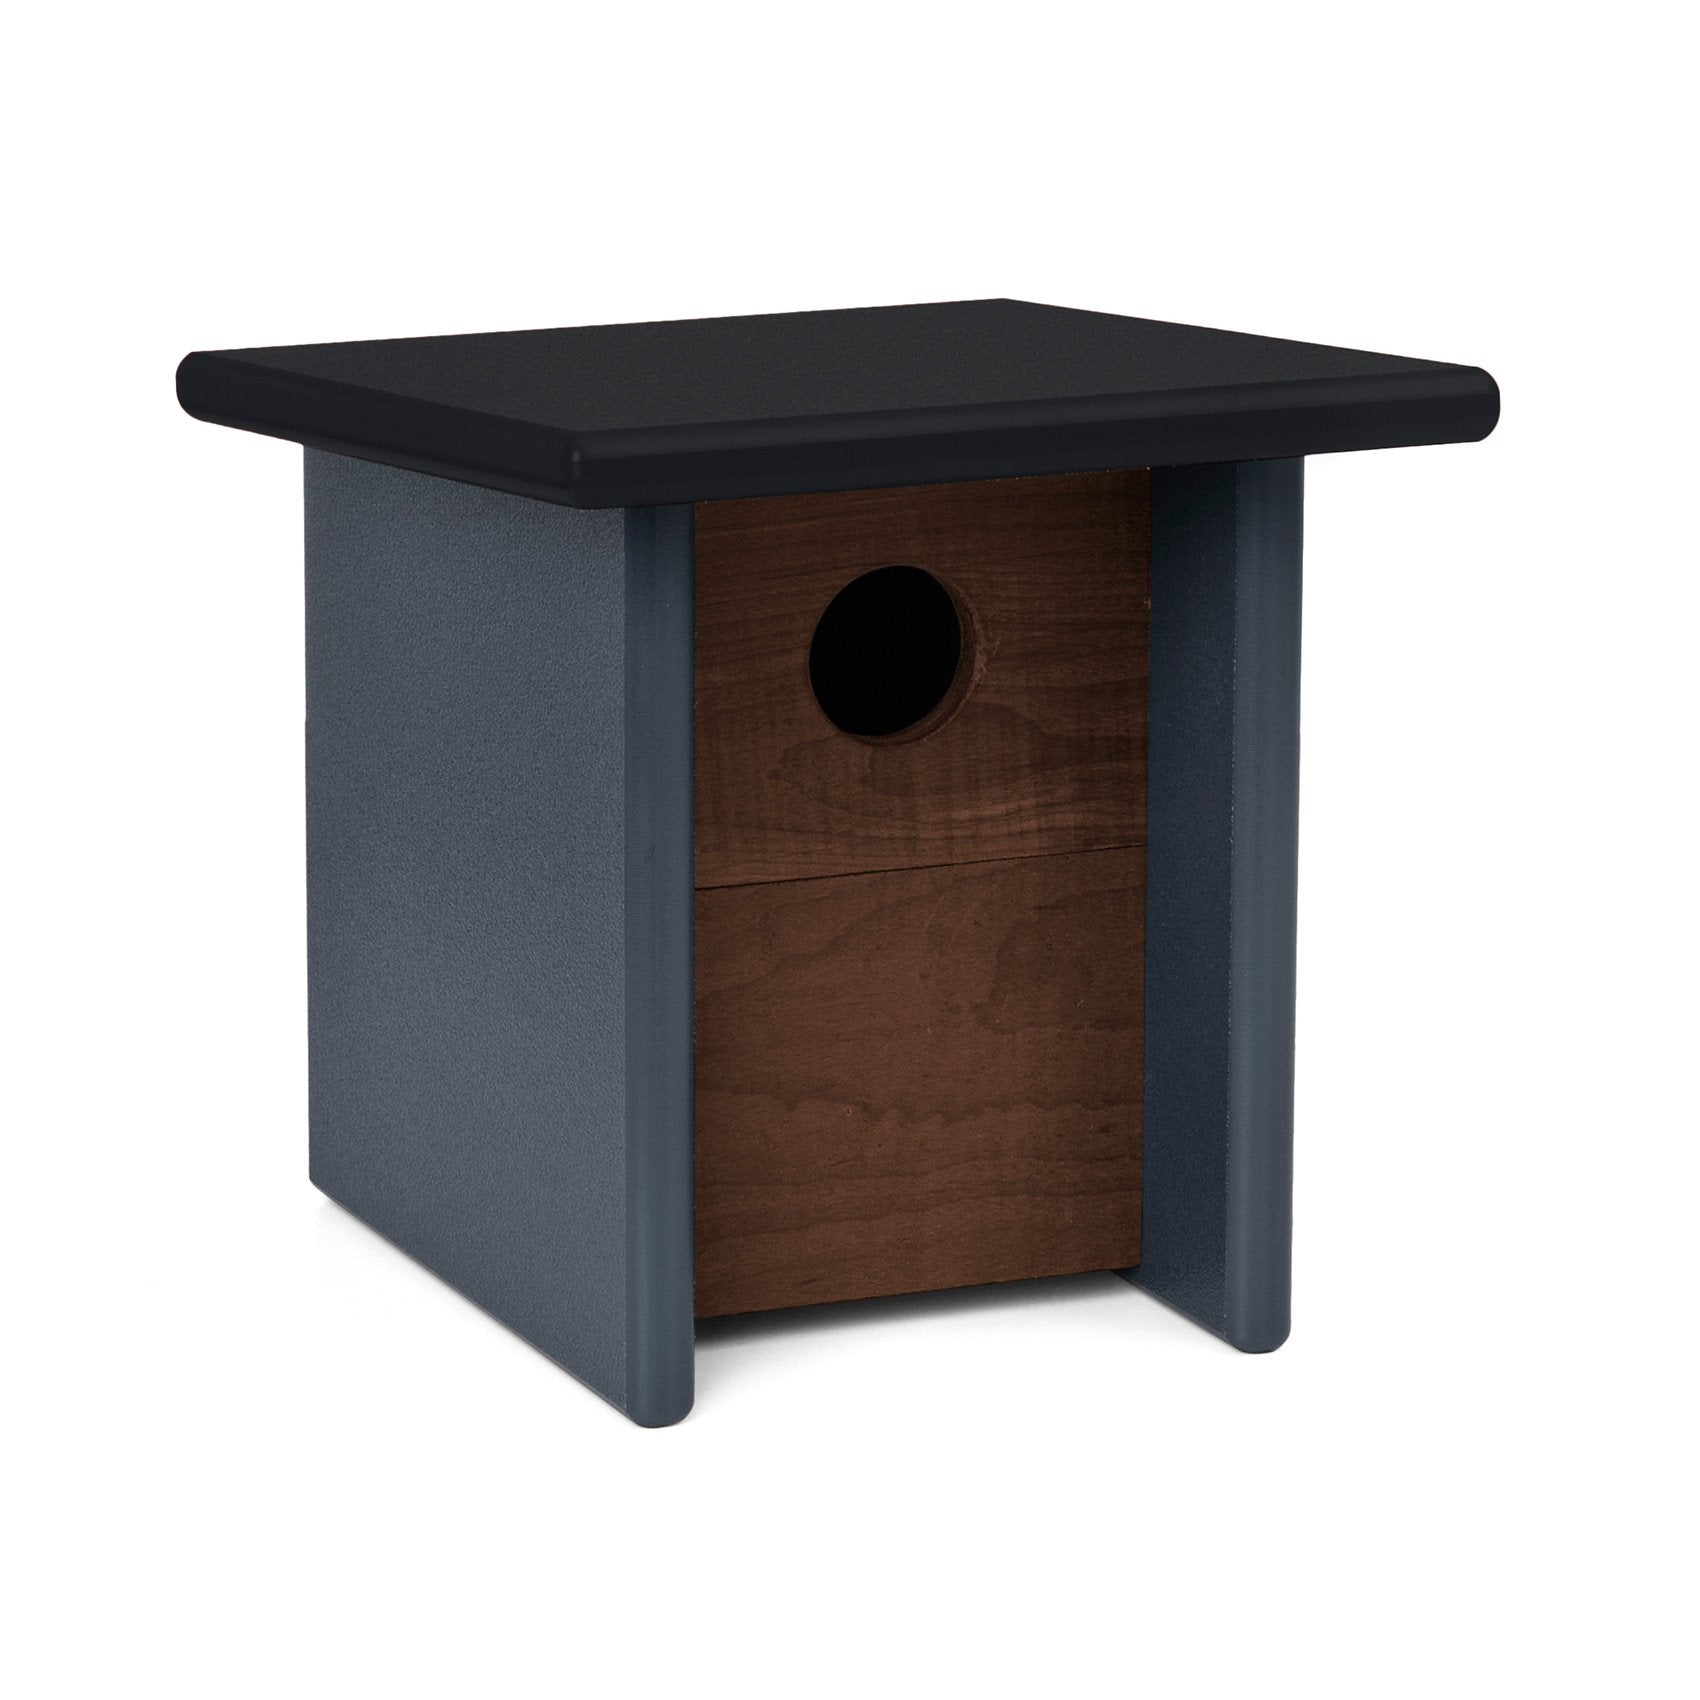 Arbor Modern Birdhouse